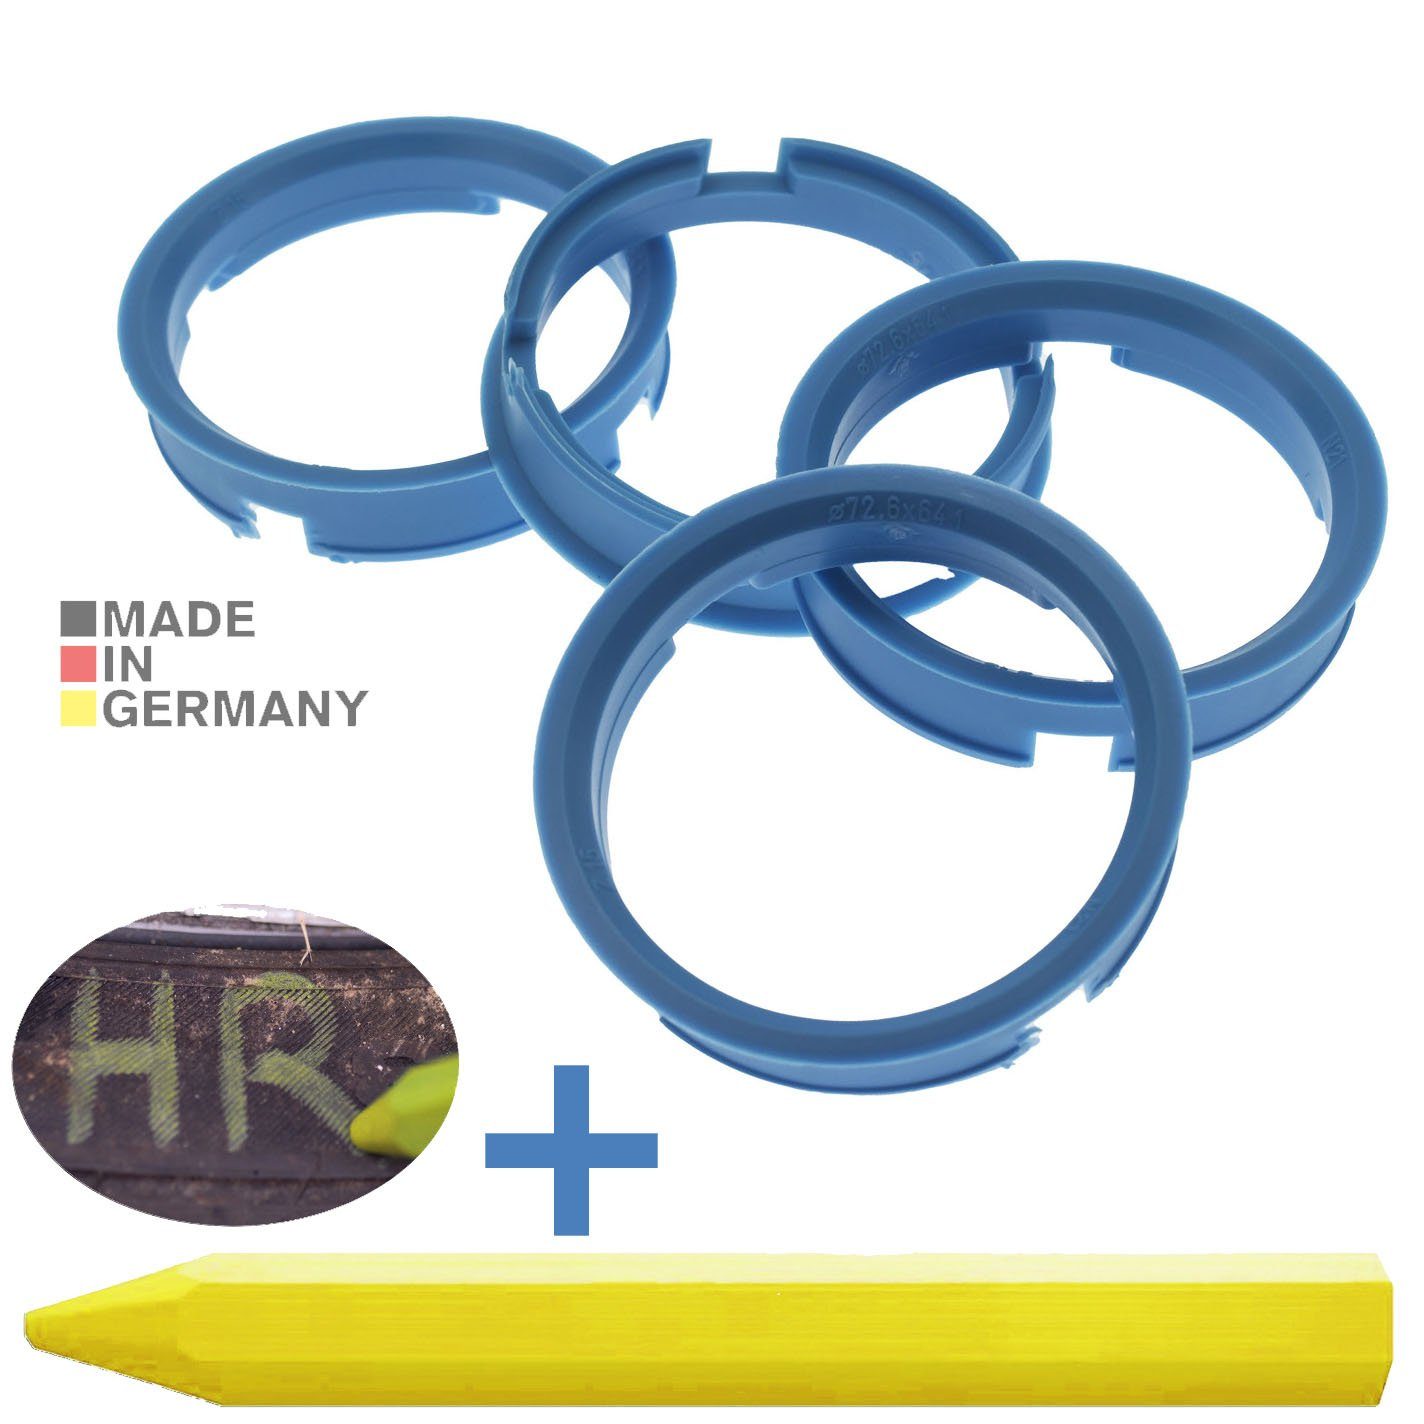 RKC Reifenstift 4X Zentrierringe Hellblau Felgen Ringe + 1x Reifen Kreide Fett Stift, Maße: 72,6 x 64,2 mm